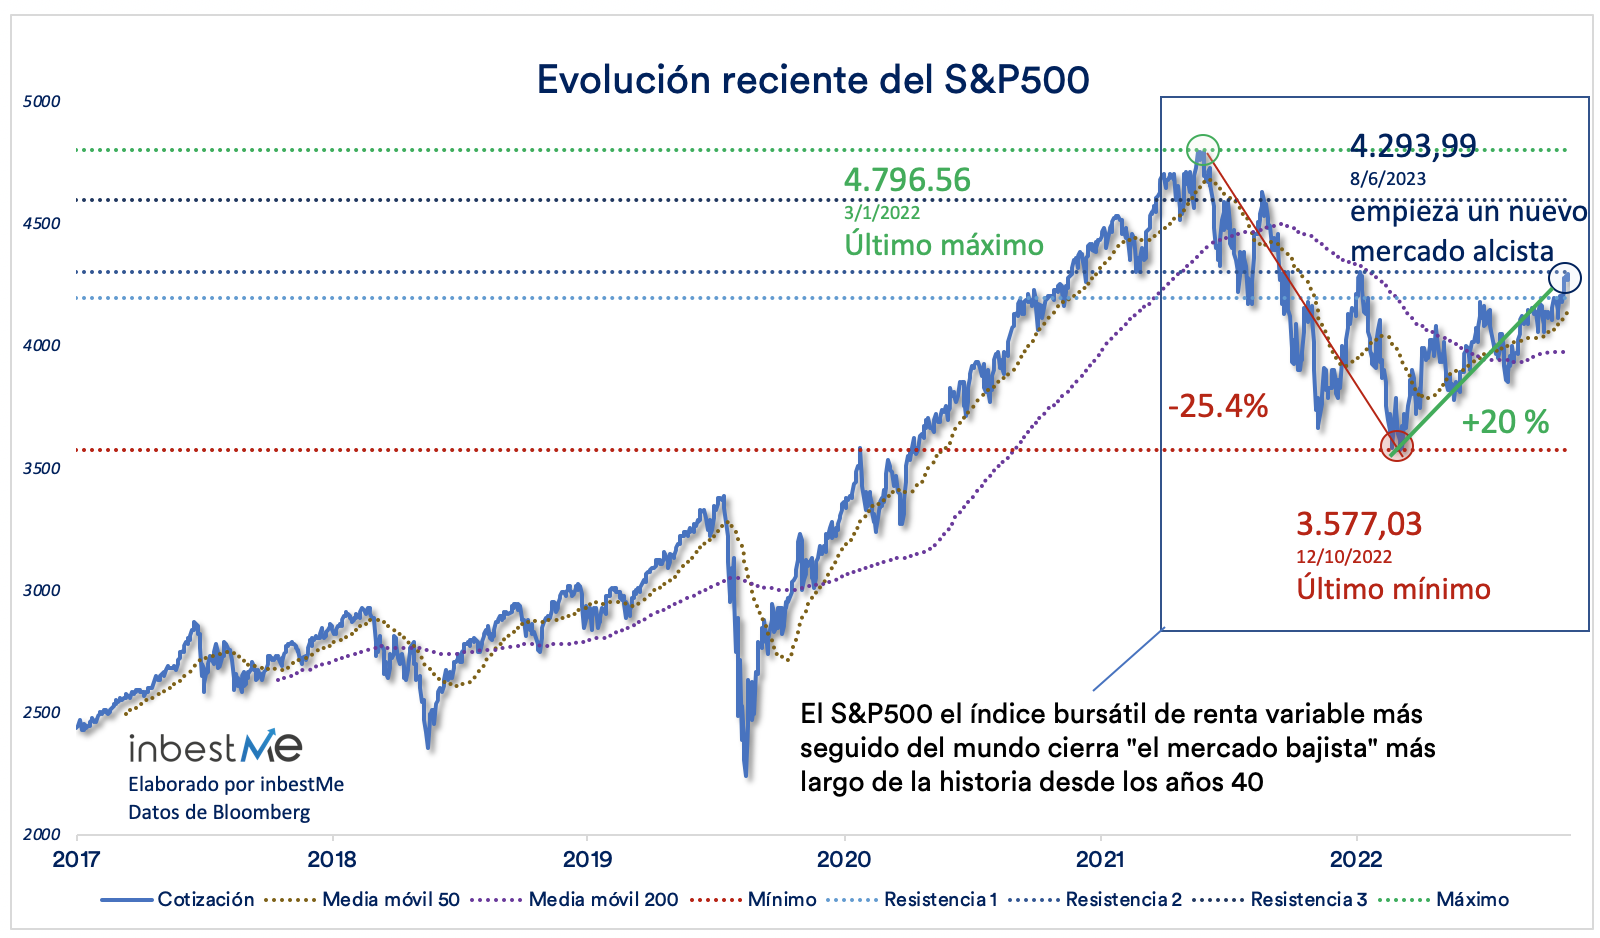 Evolución reciente del S&P500